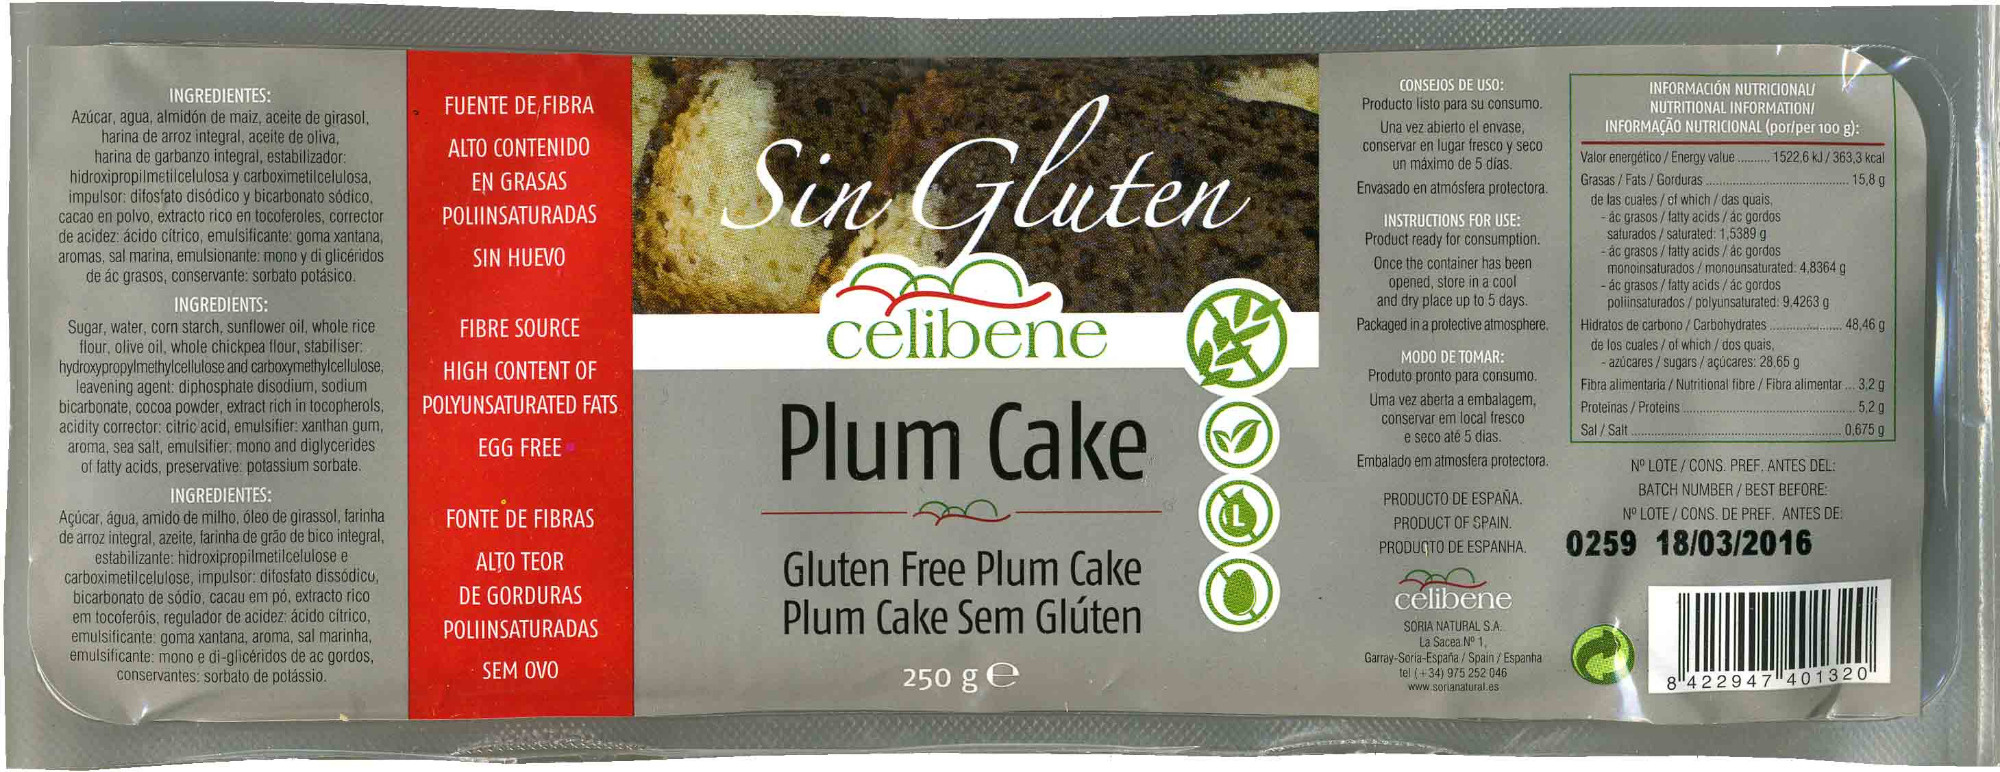 Plum cake sin gluten - Product - es